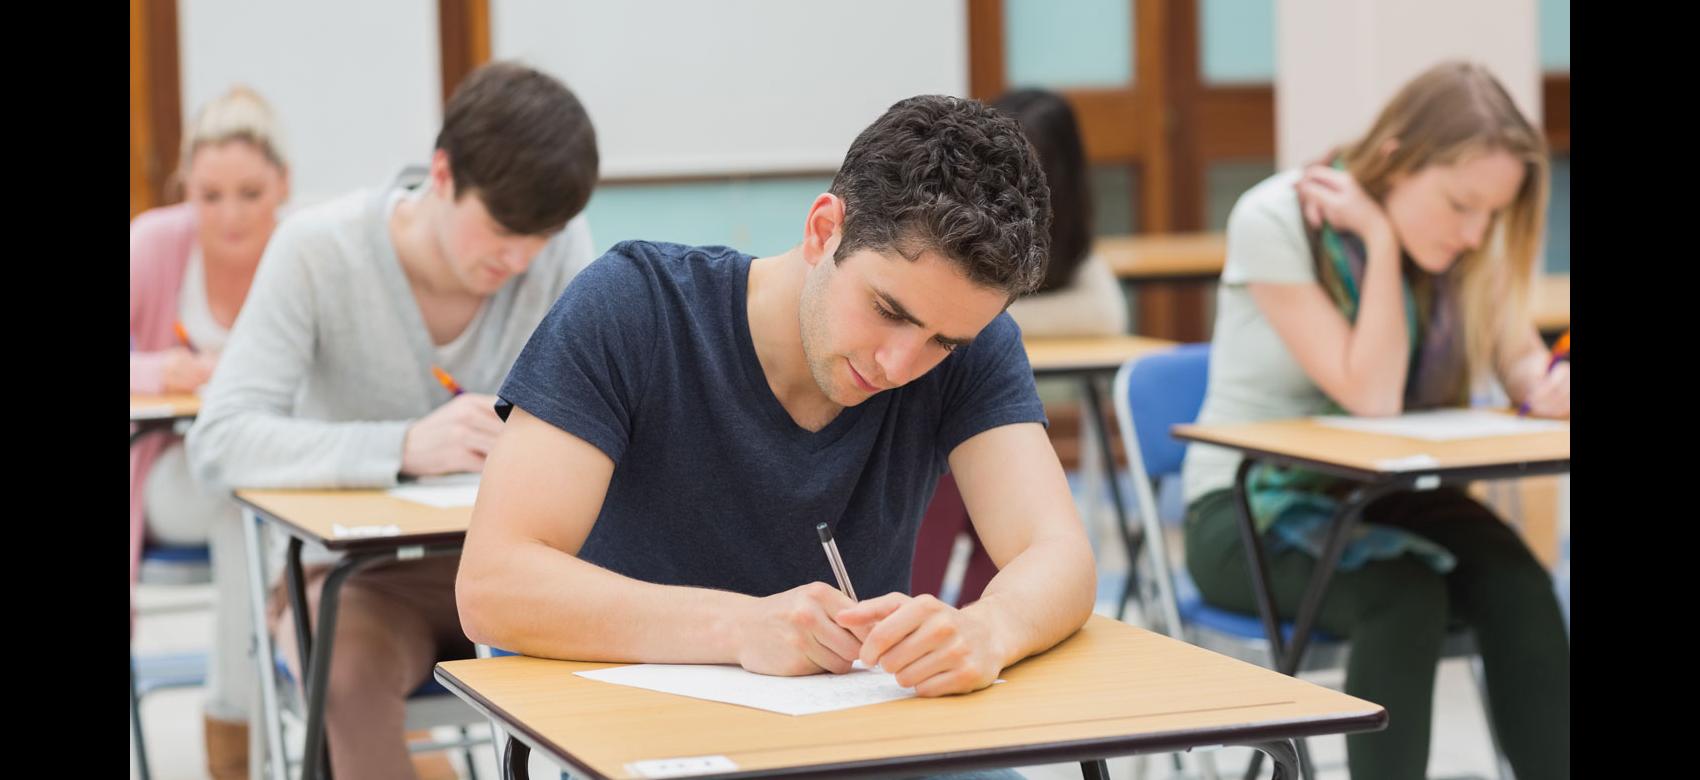 Chico joven inclinado sobre una mesa mientras escribe en una hoja de examen